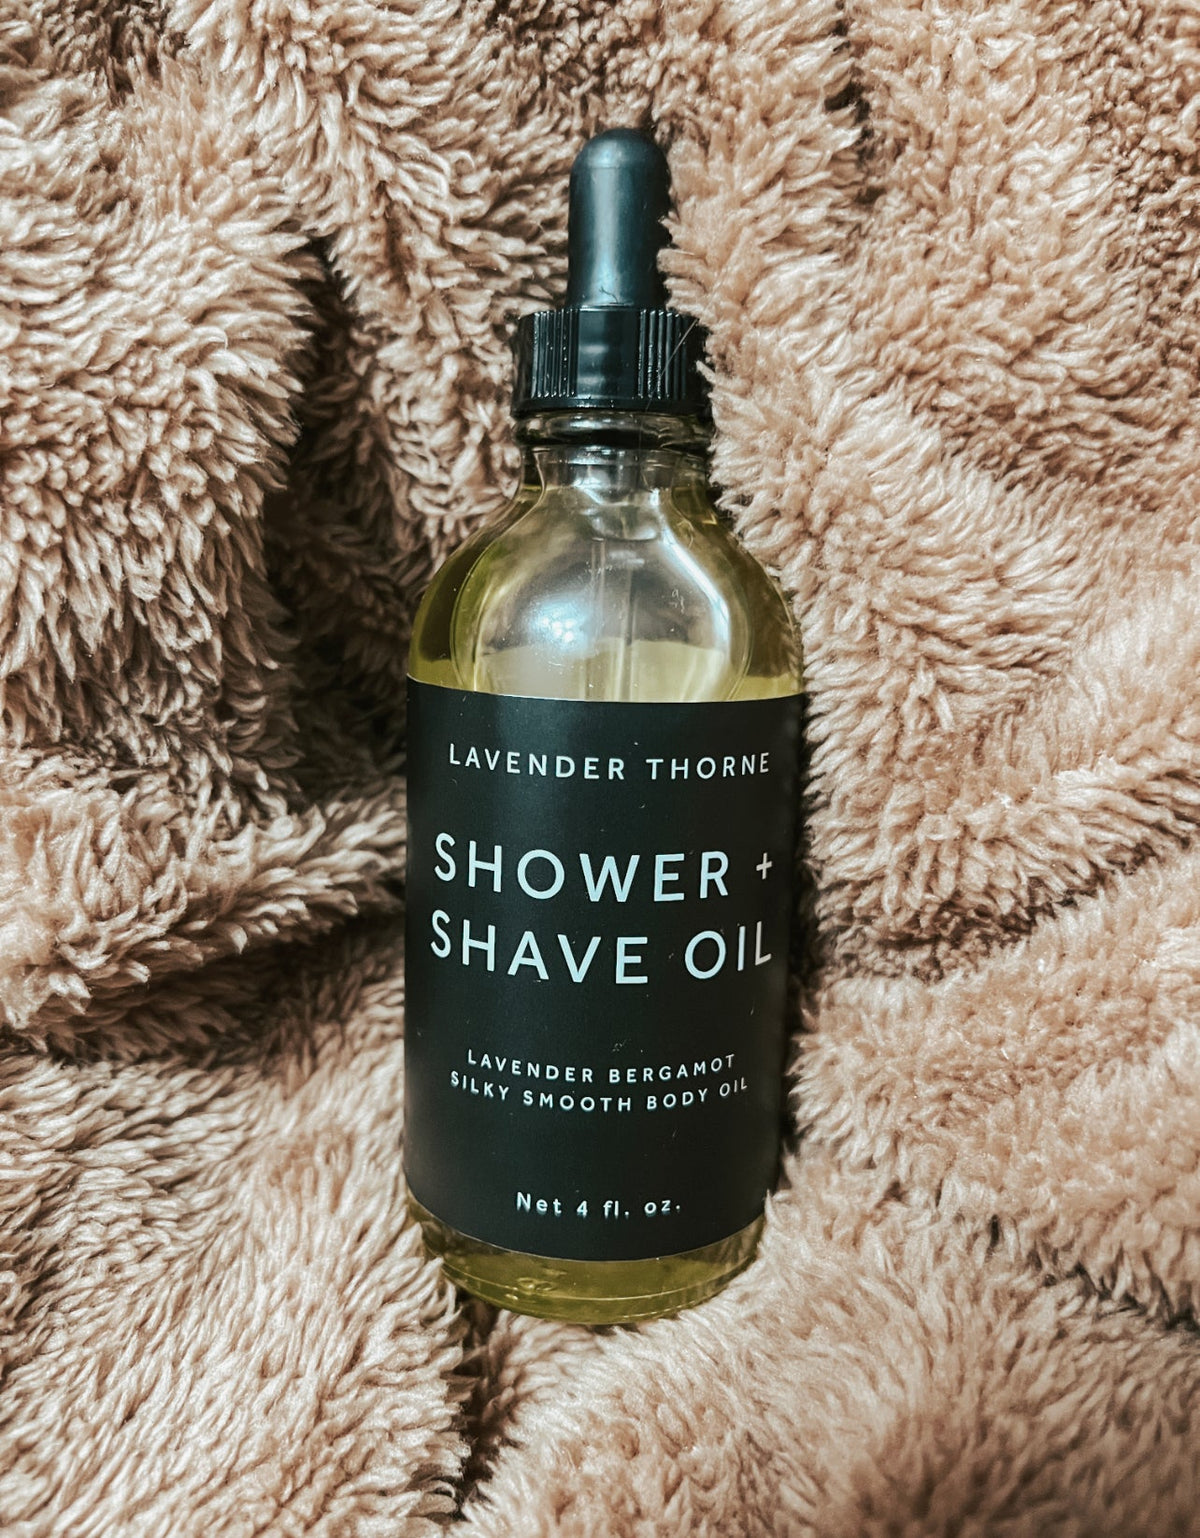 Shower + Shave Oil